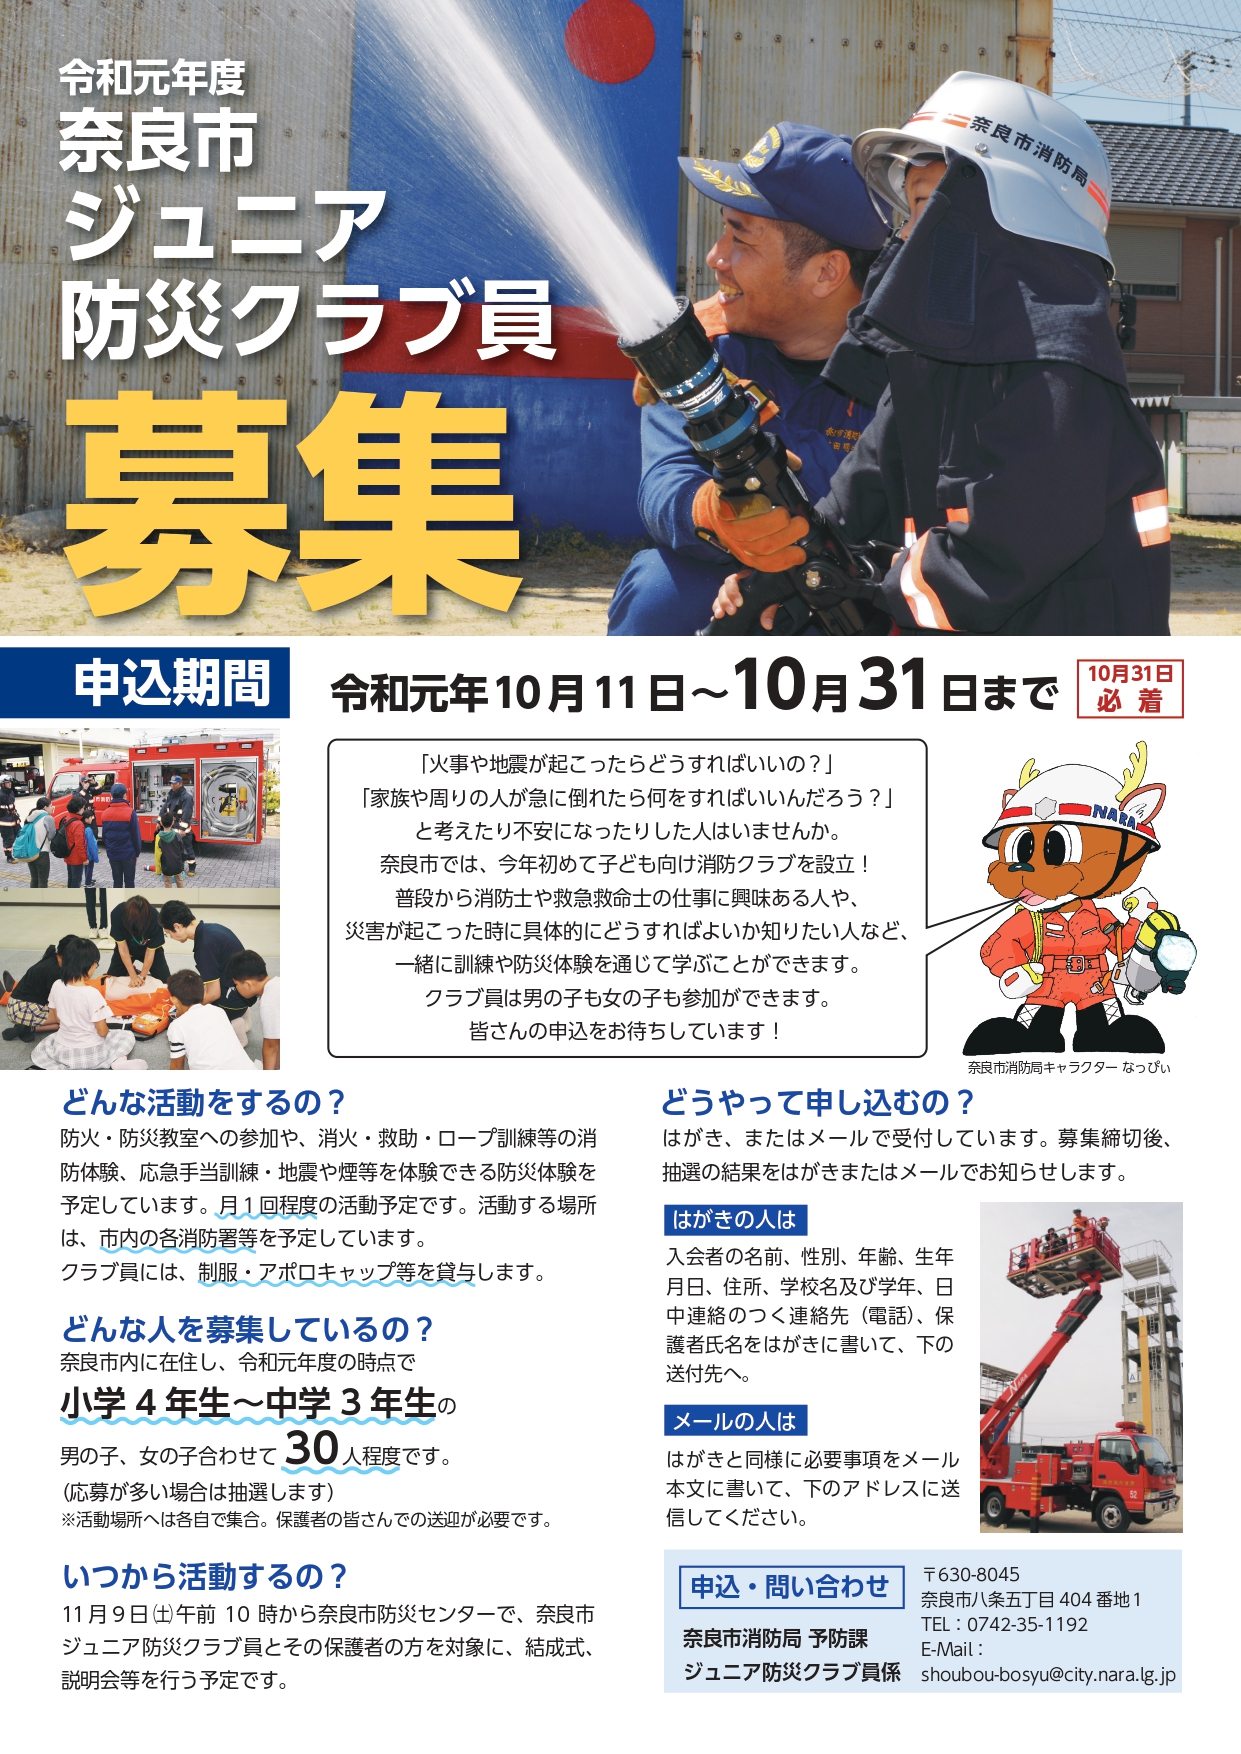 奈良市ジュニア防災クラブ員の募集!(令和元年10月11日発表)の画像